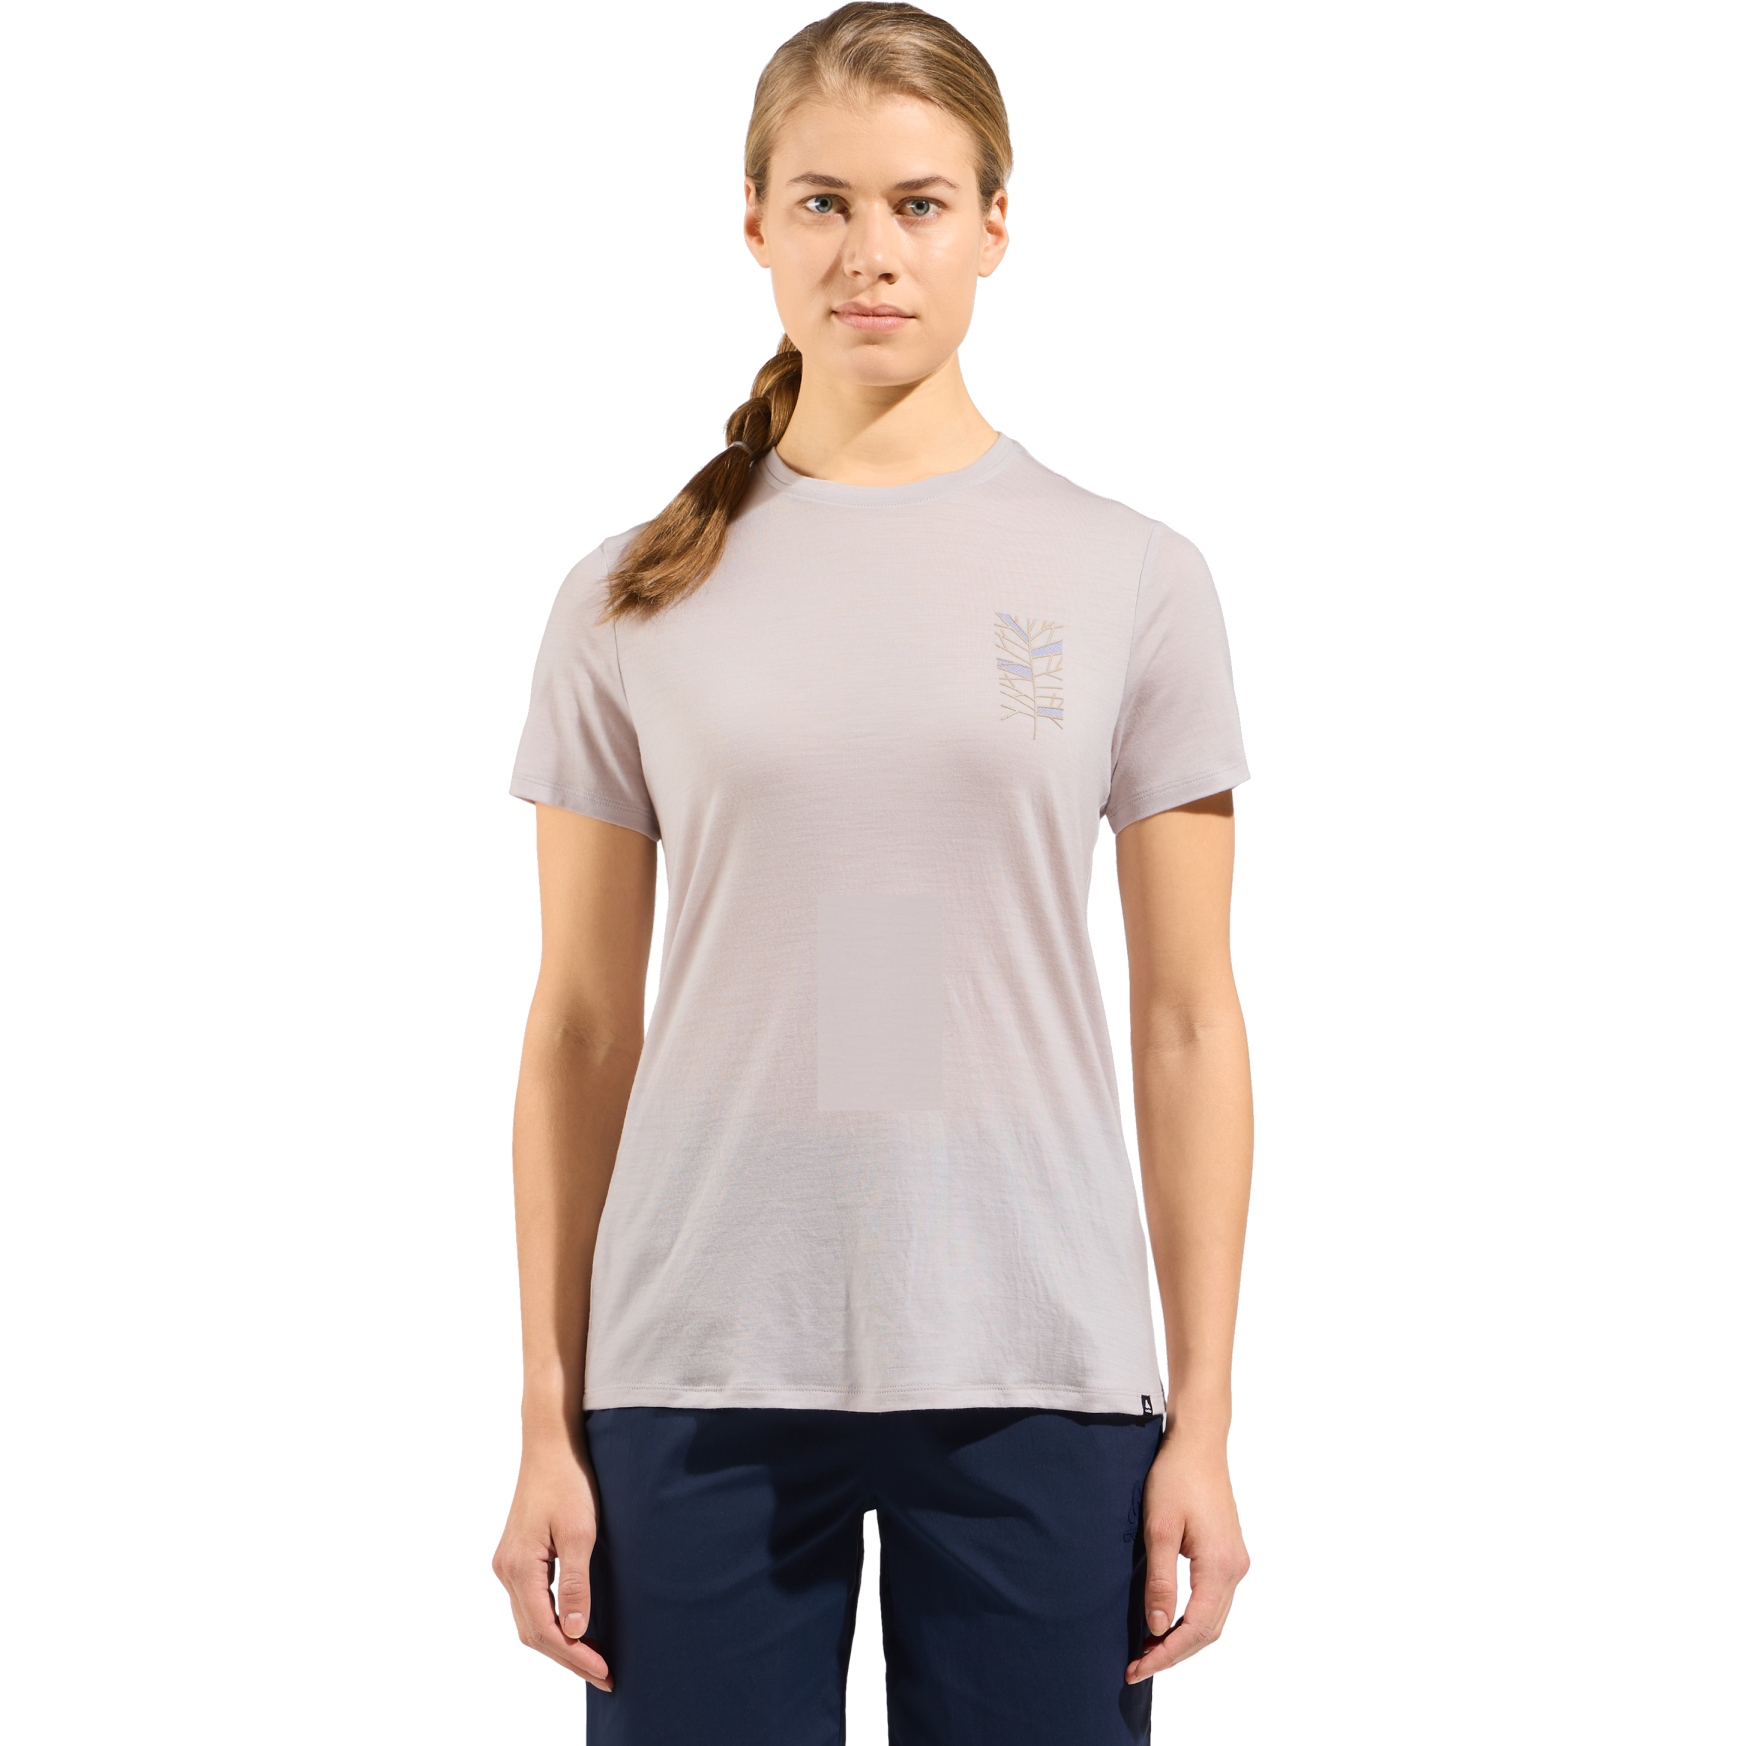 Produktbild von Odlo Ascent Merino 160 T-Shirt mit Baummotiv Damen - silver cloud